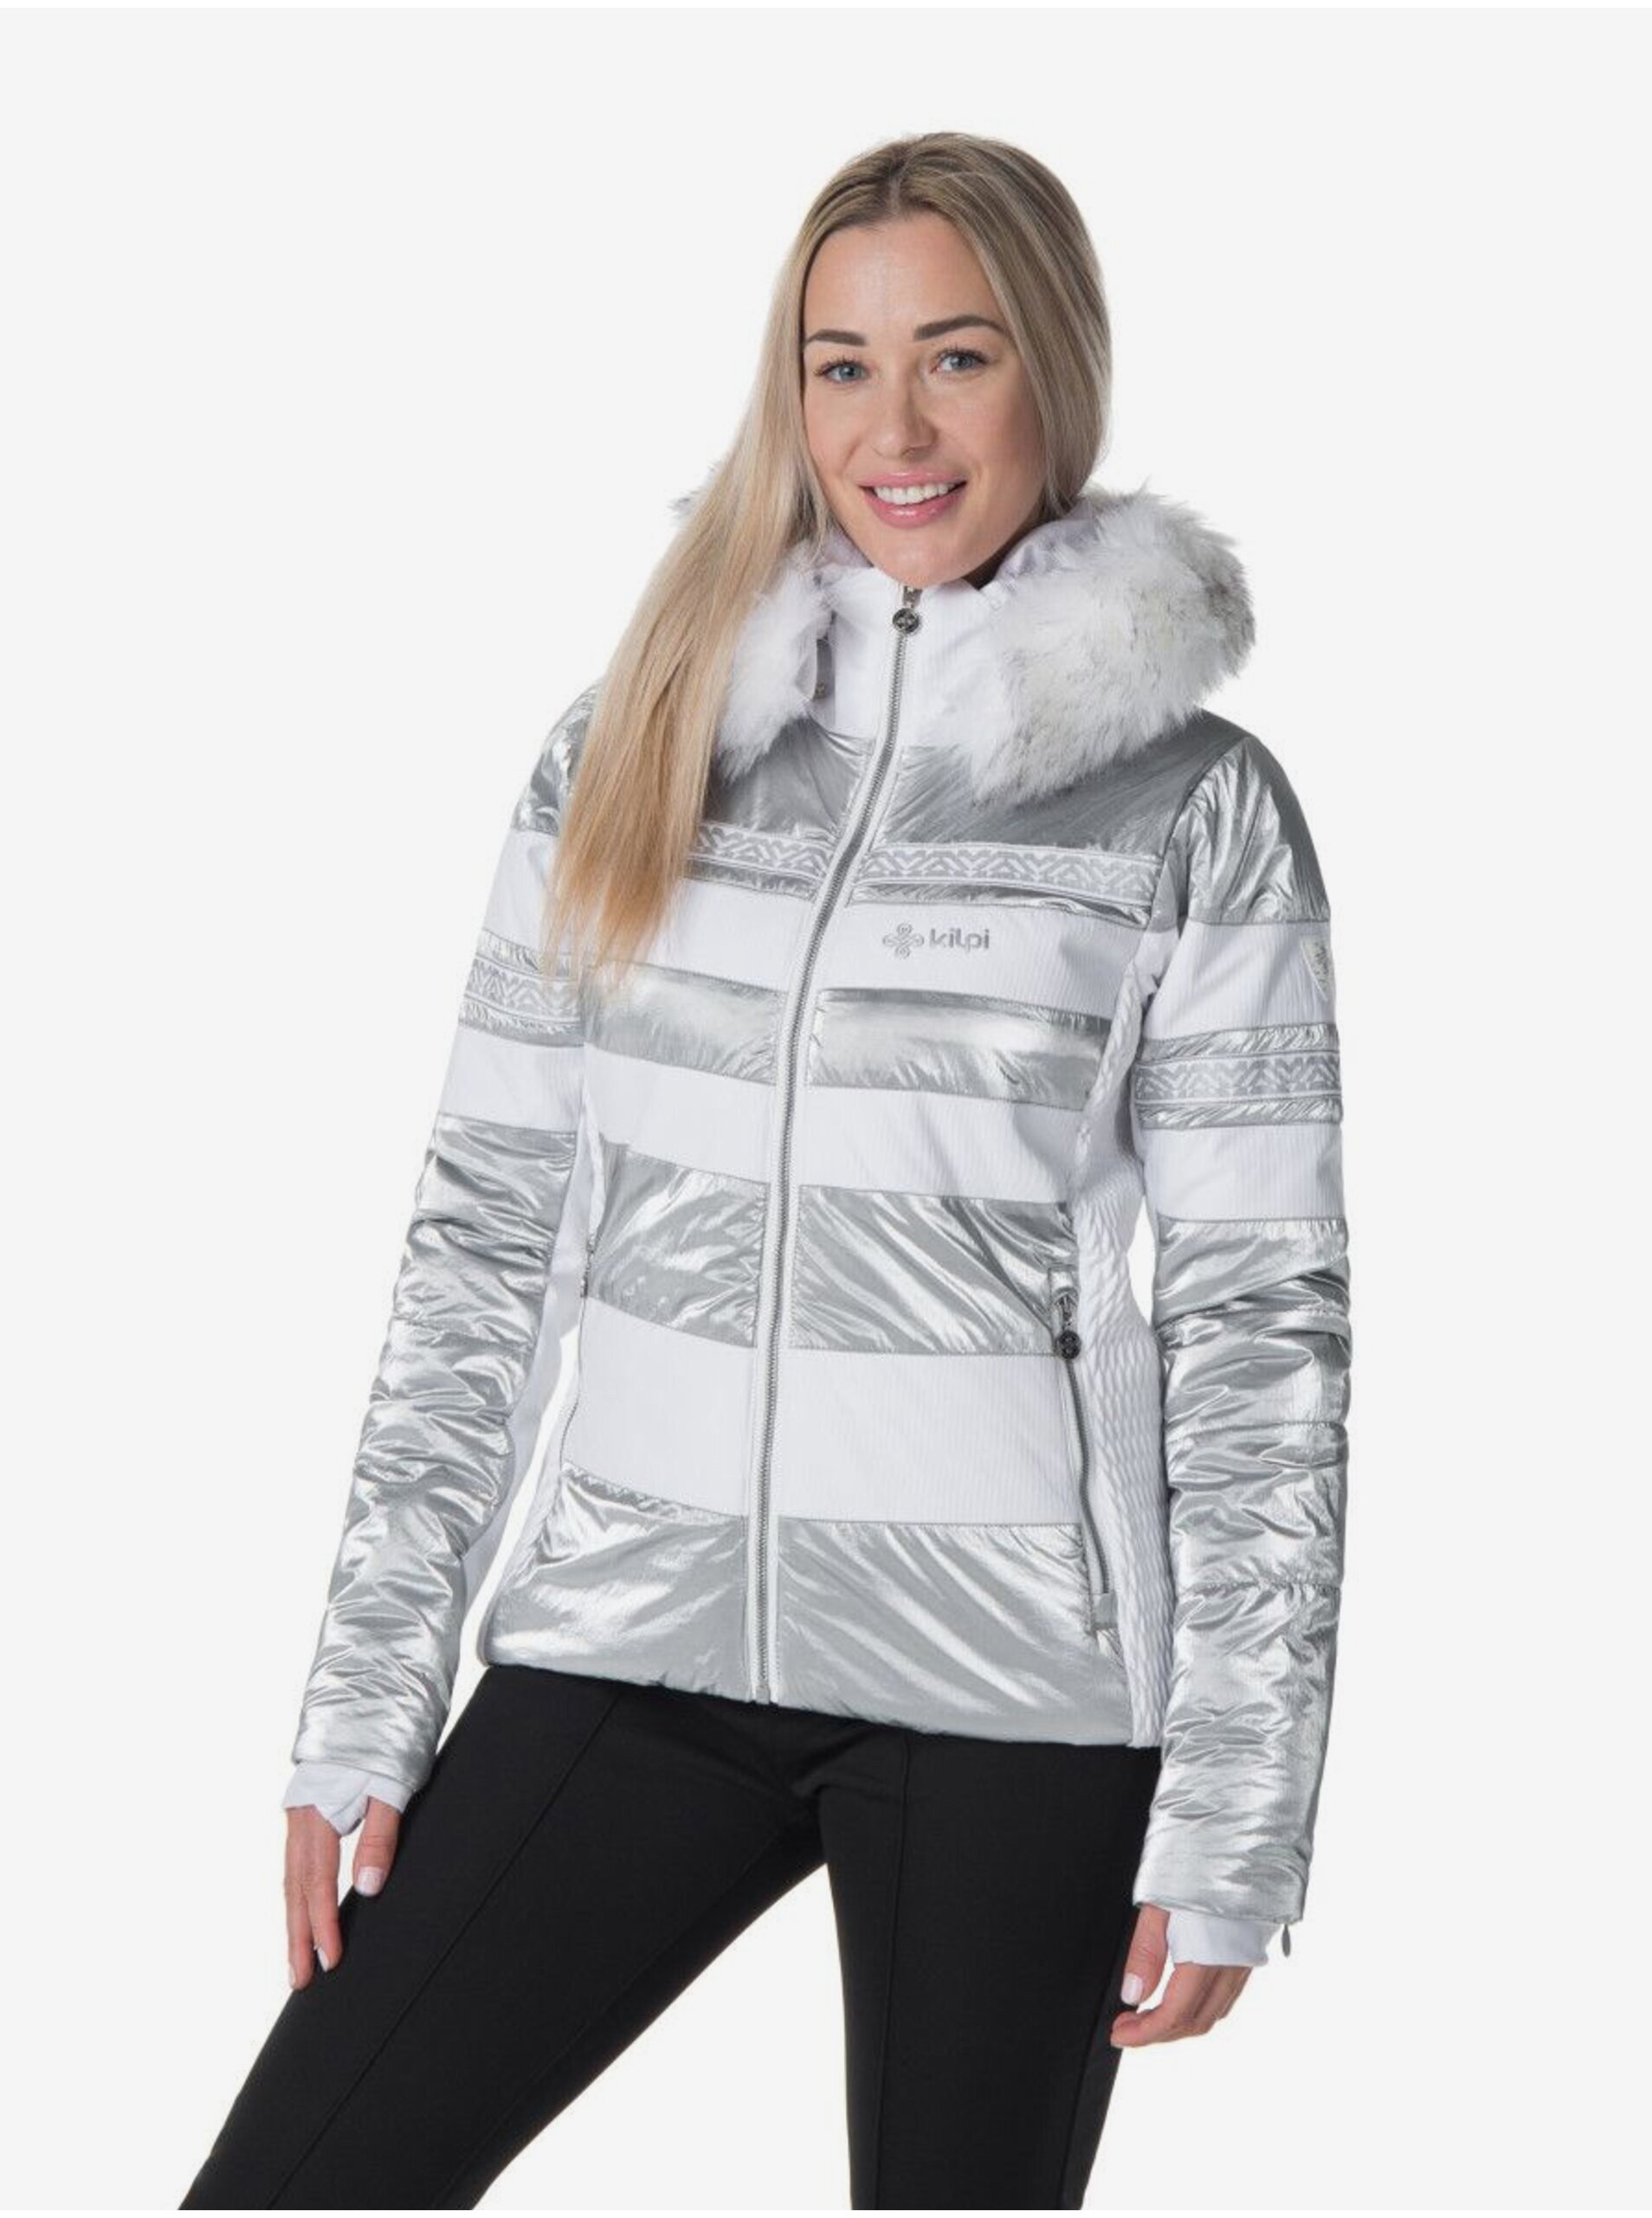 E-shop Dámská lyžařská bunda v bílé, šedé a stříbrné barvě Kilpi Dalila